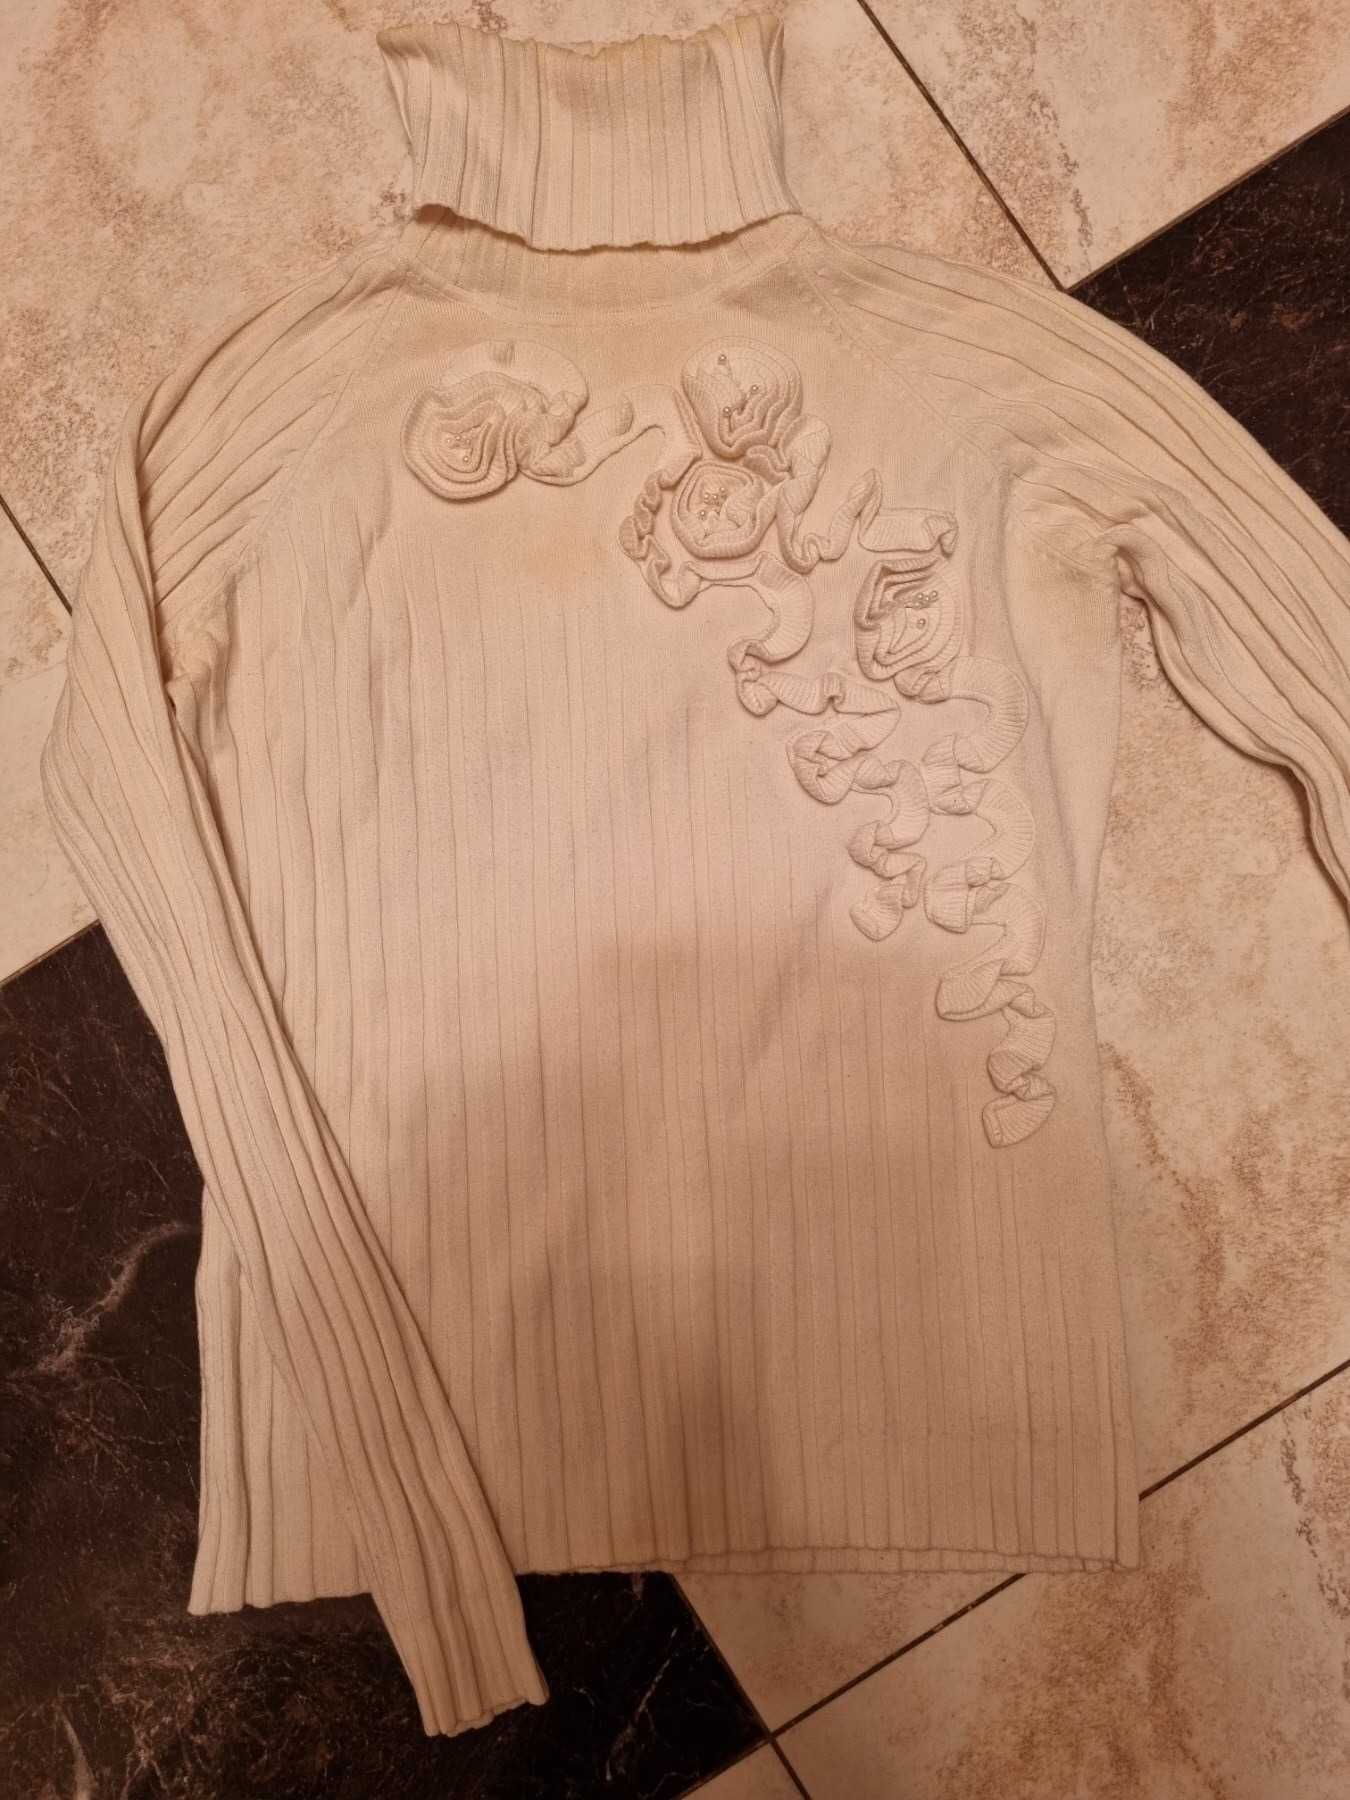 Продам женский белый свитер р.48,рост 170 см